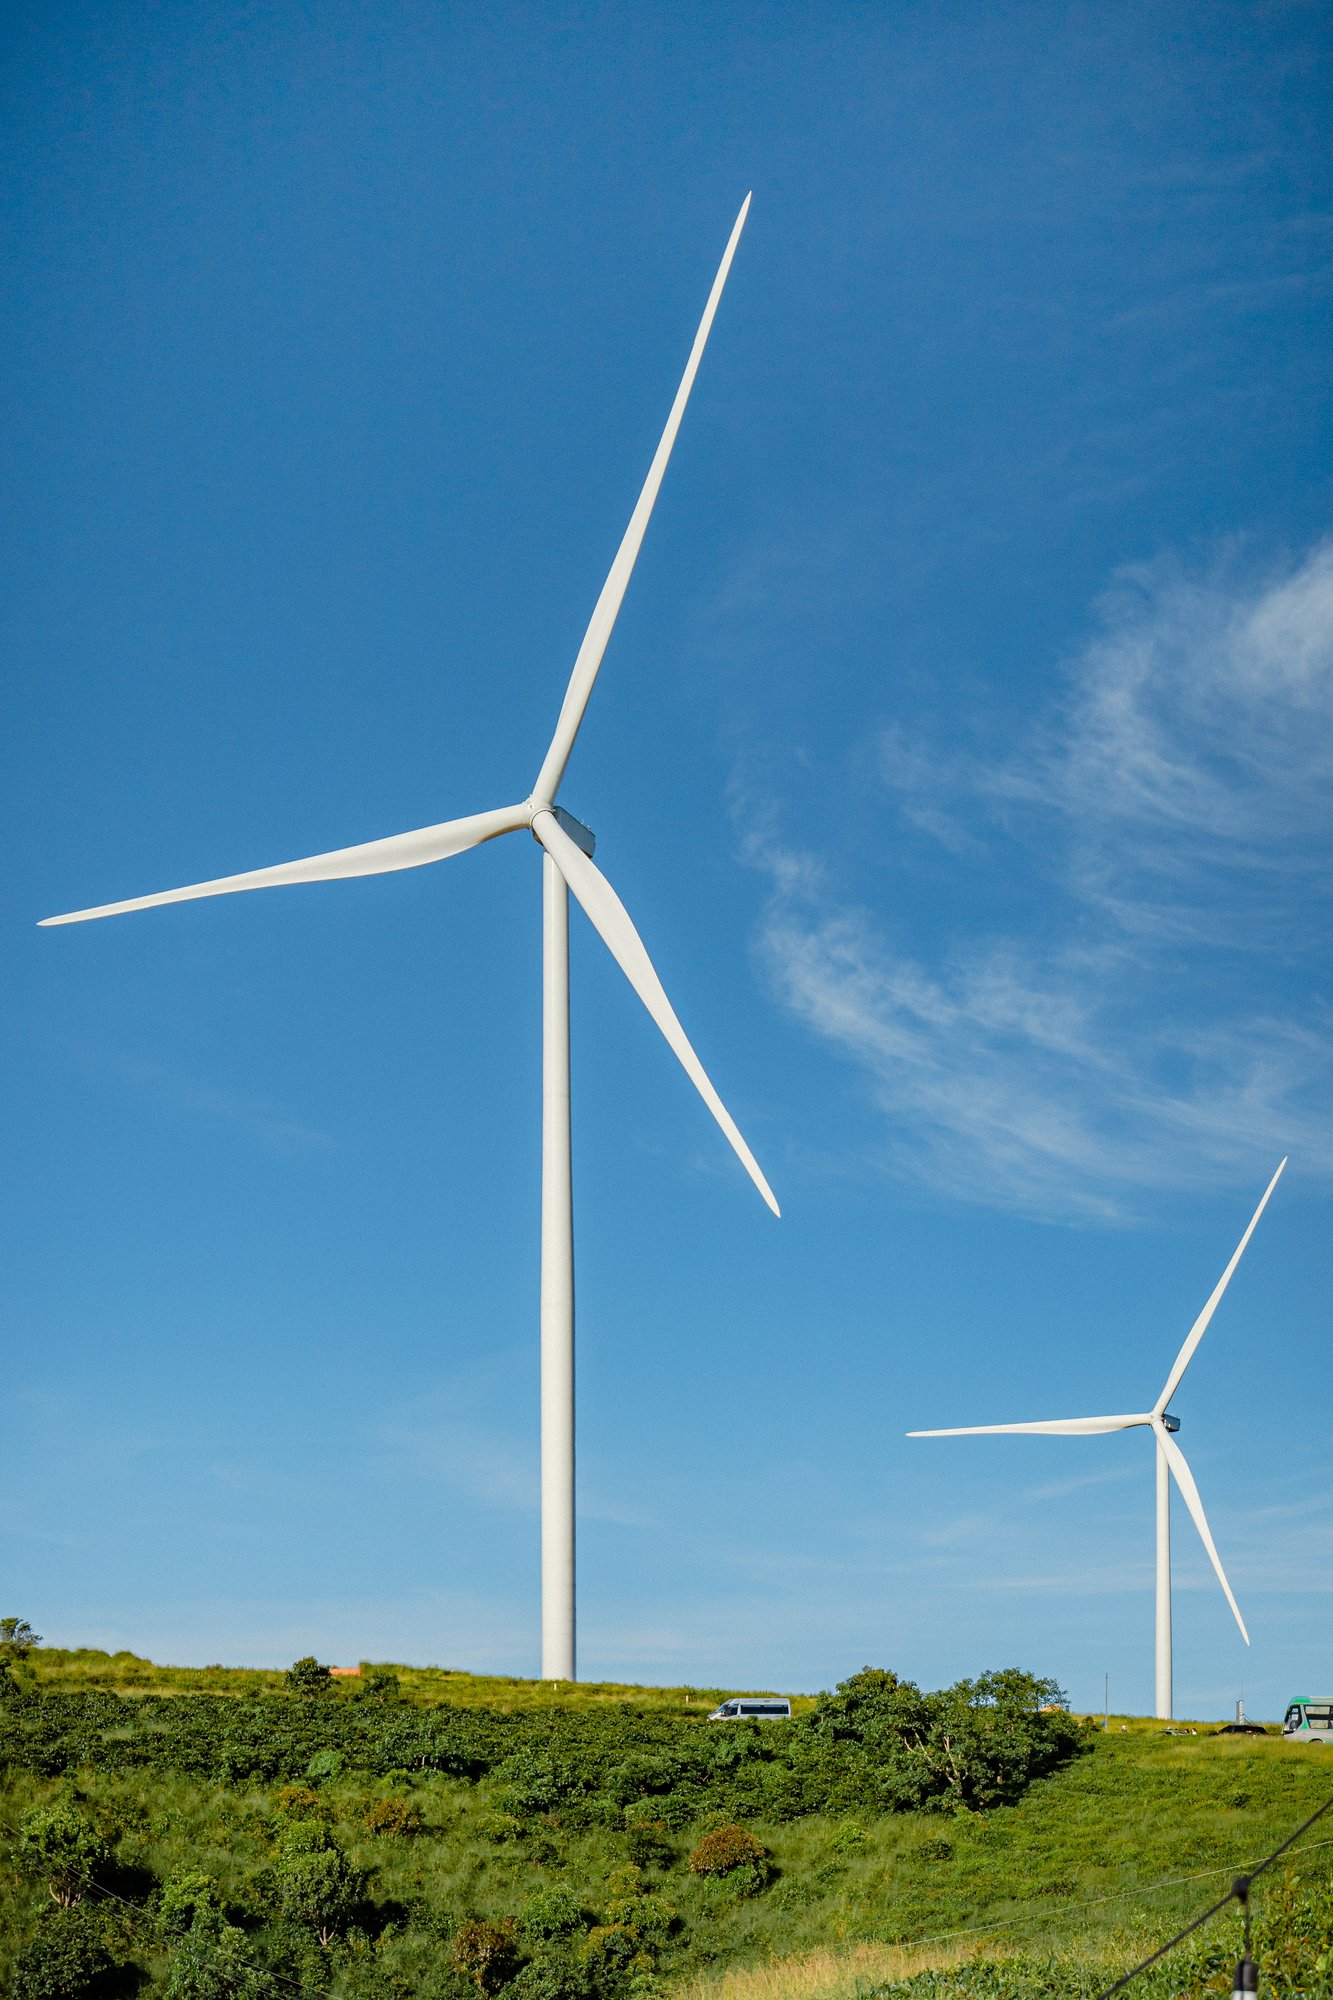 Gigantic wind turbines